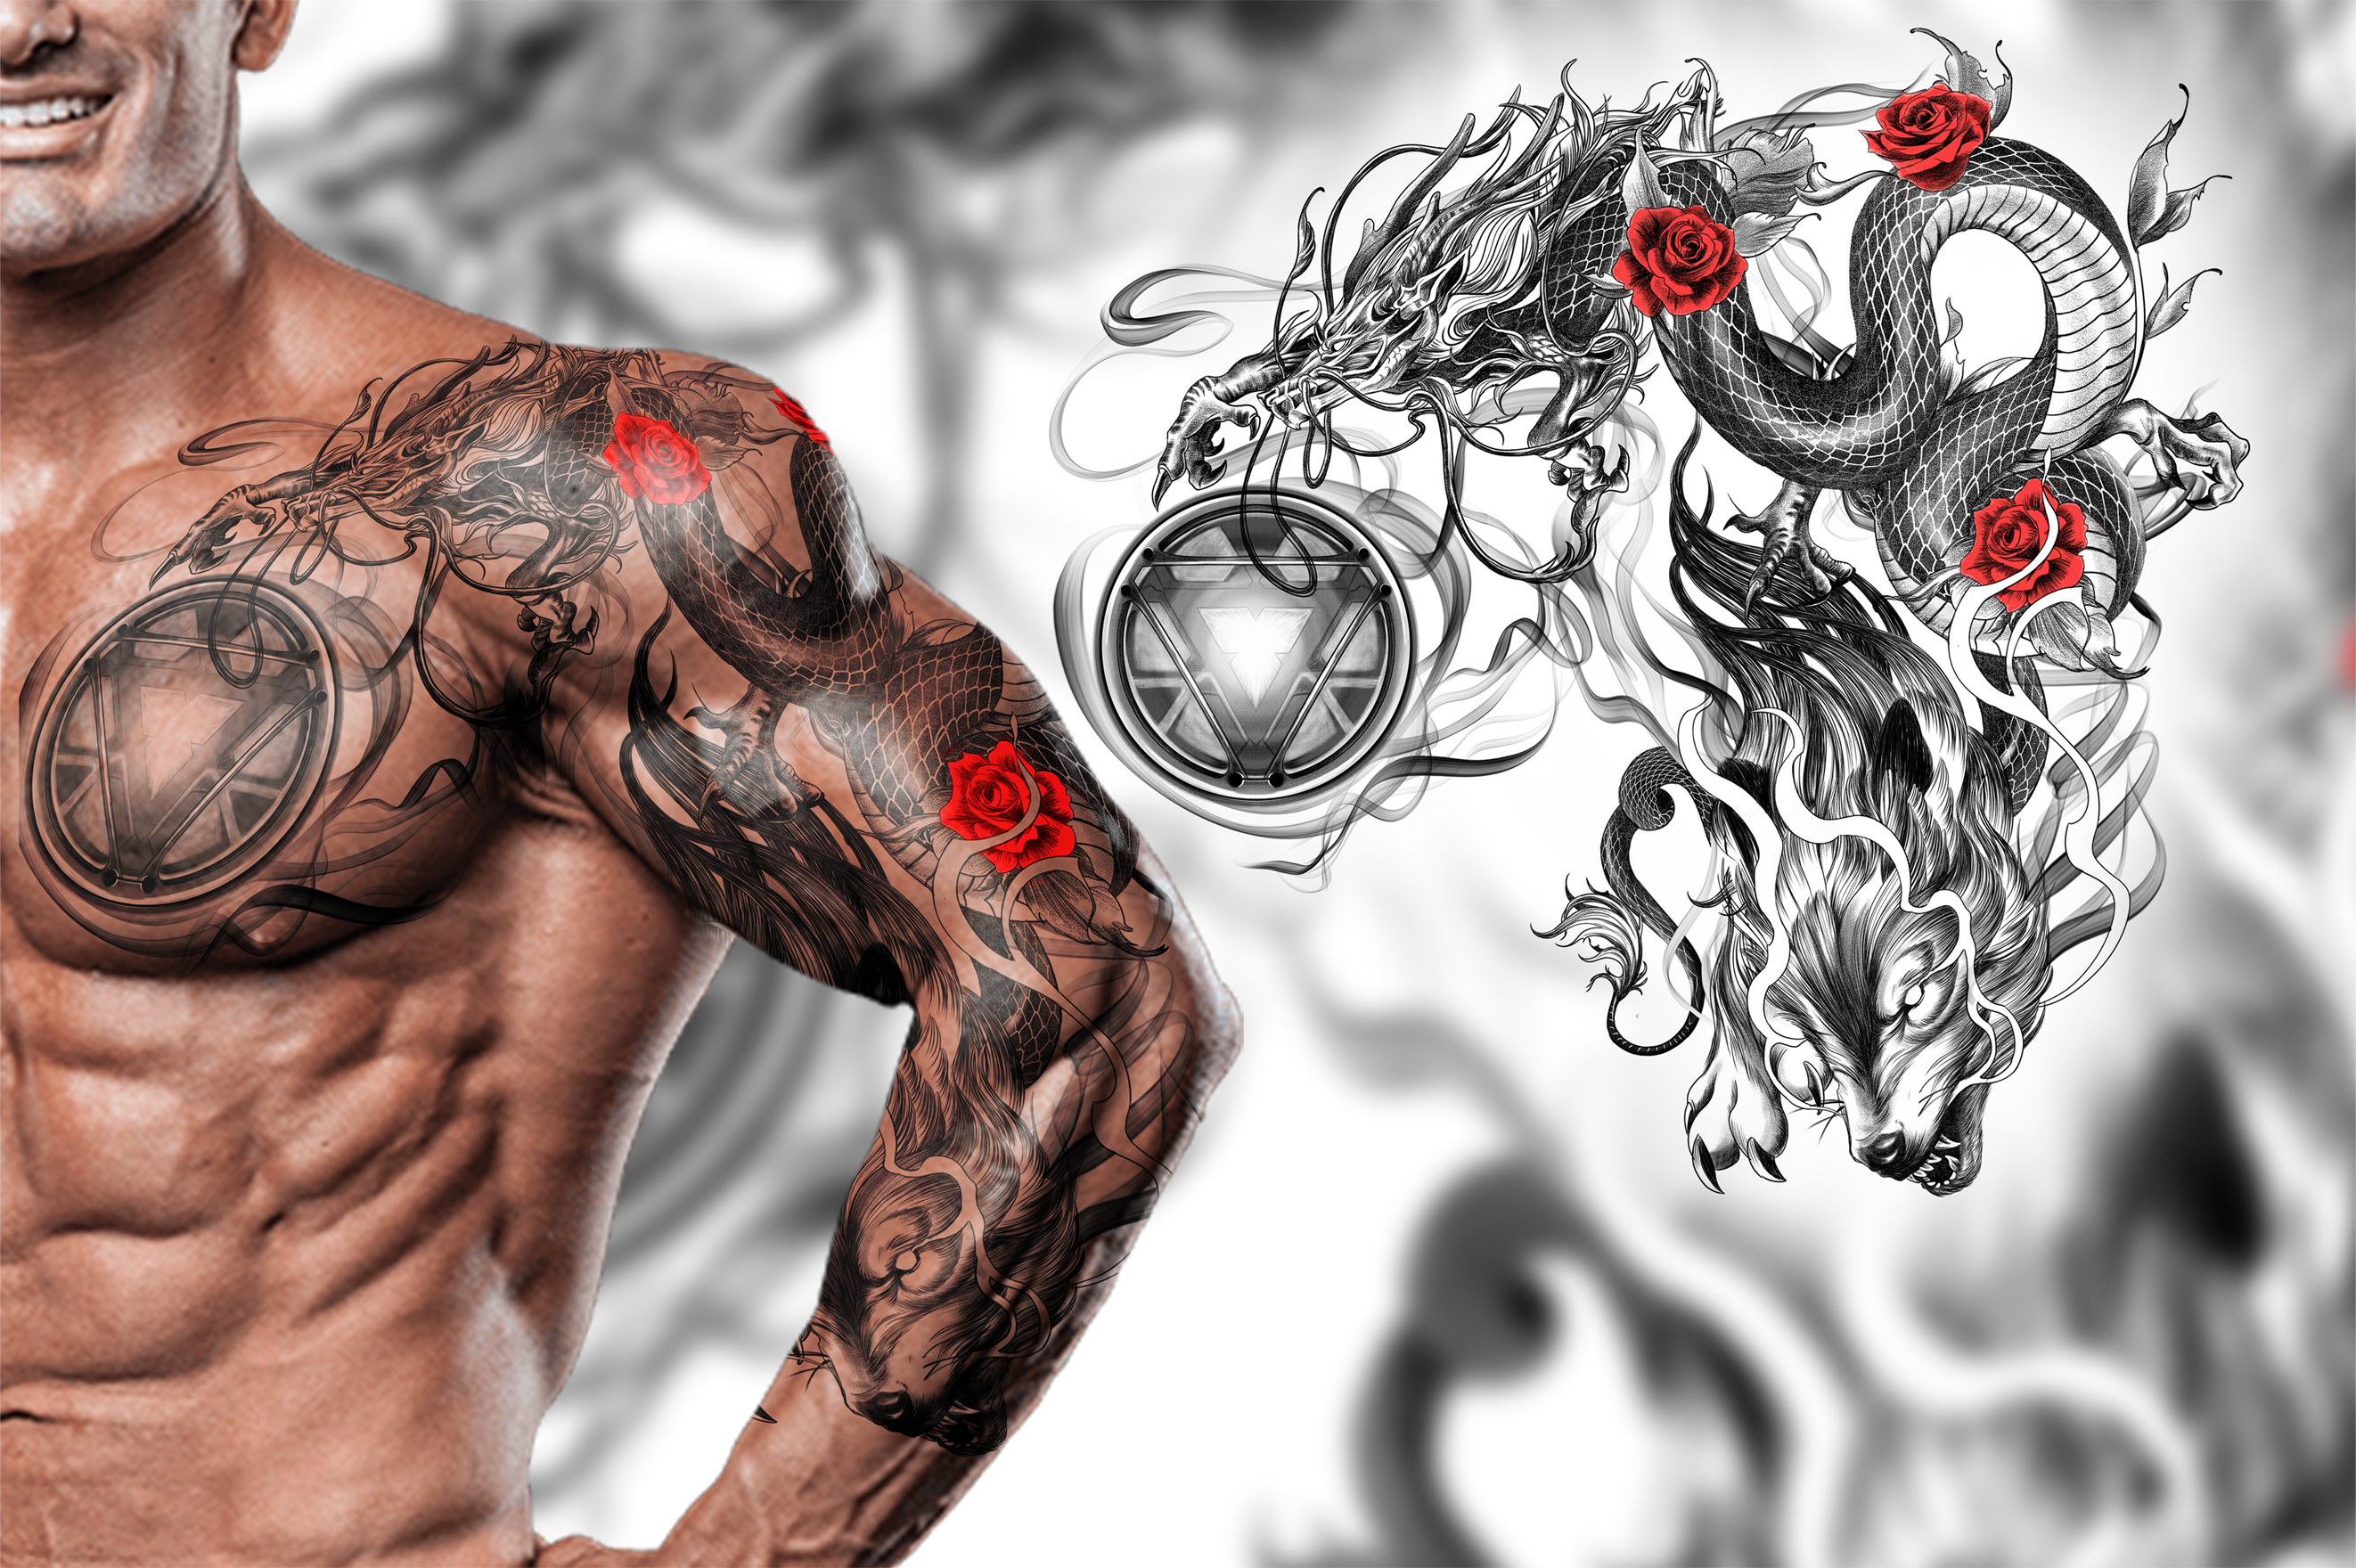 Minimalist arc reactor tattoo design  Marvel tattoos Iron man tattoo  Avengers tattoo